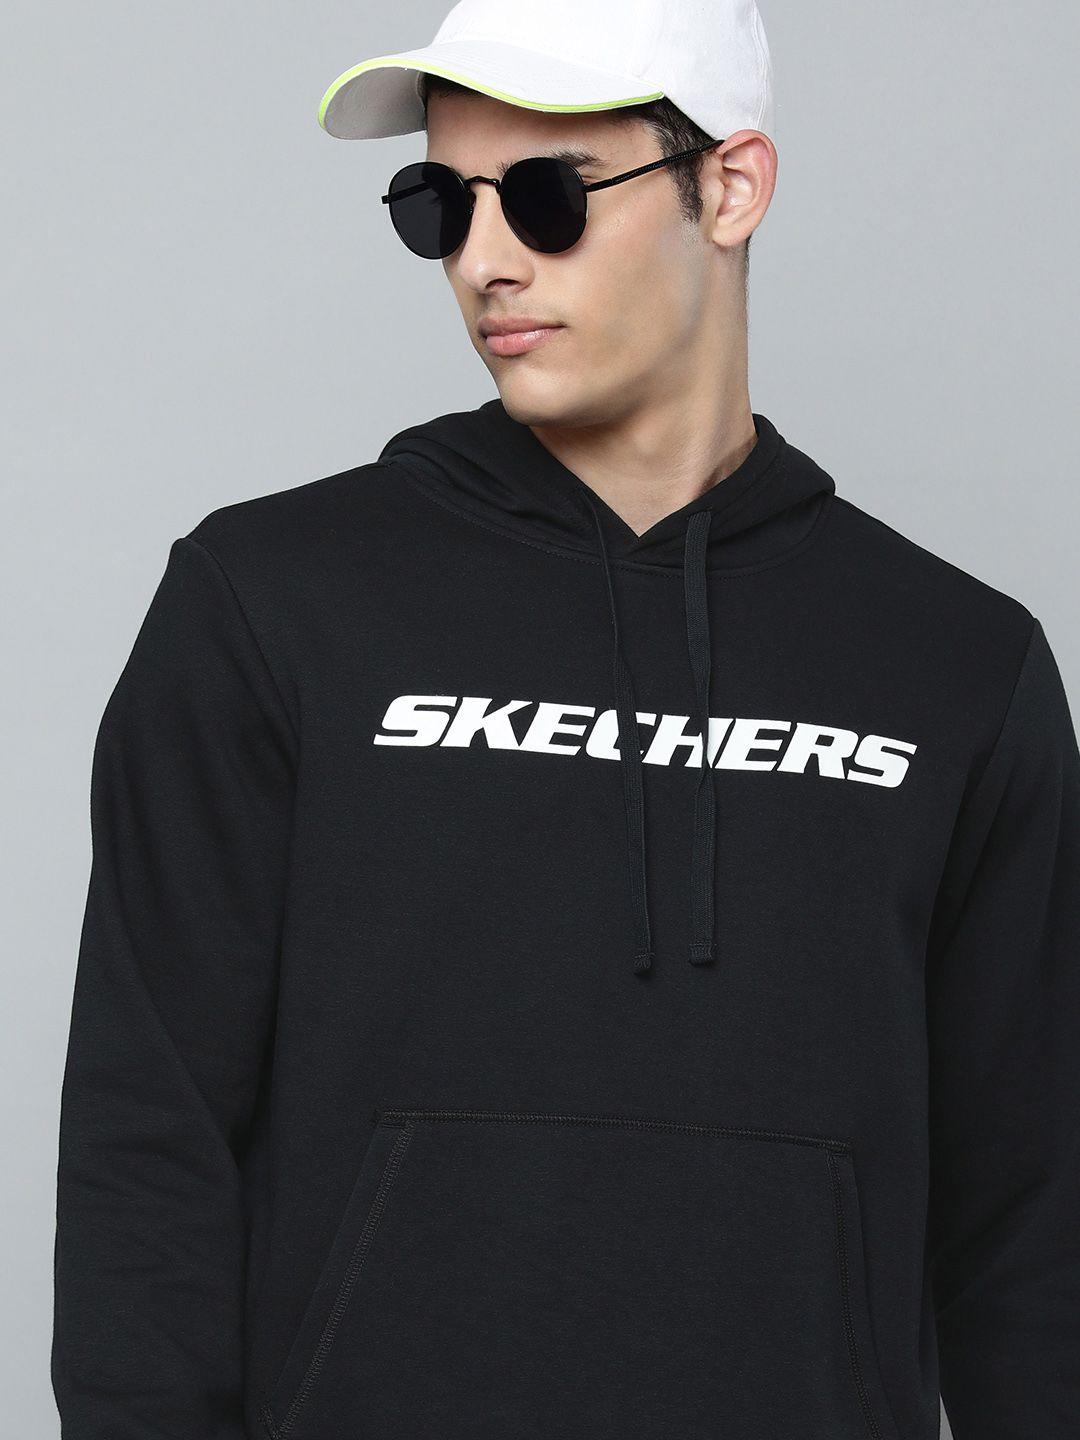 Skechers Men Black Brand Logo Print Hooded Heritage II Pullover Sweatshirt